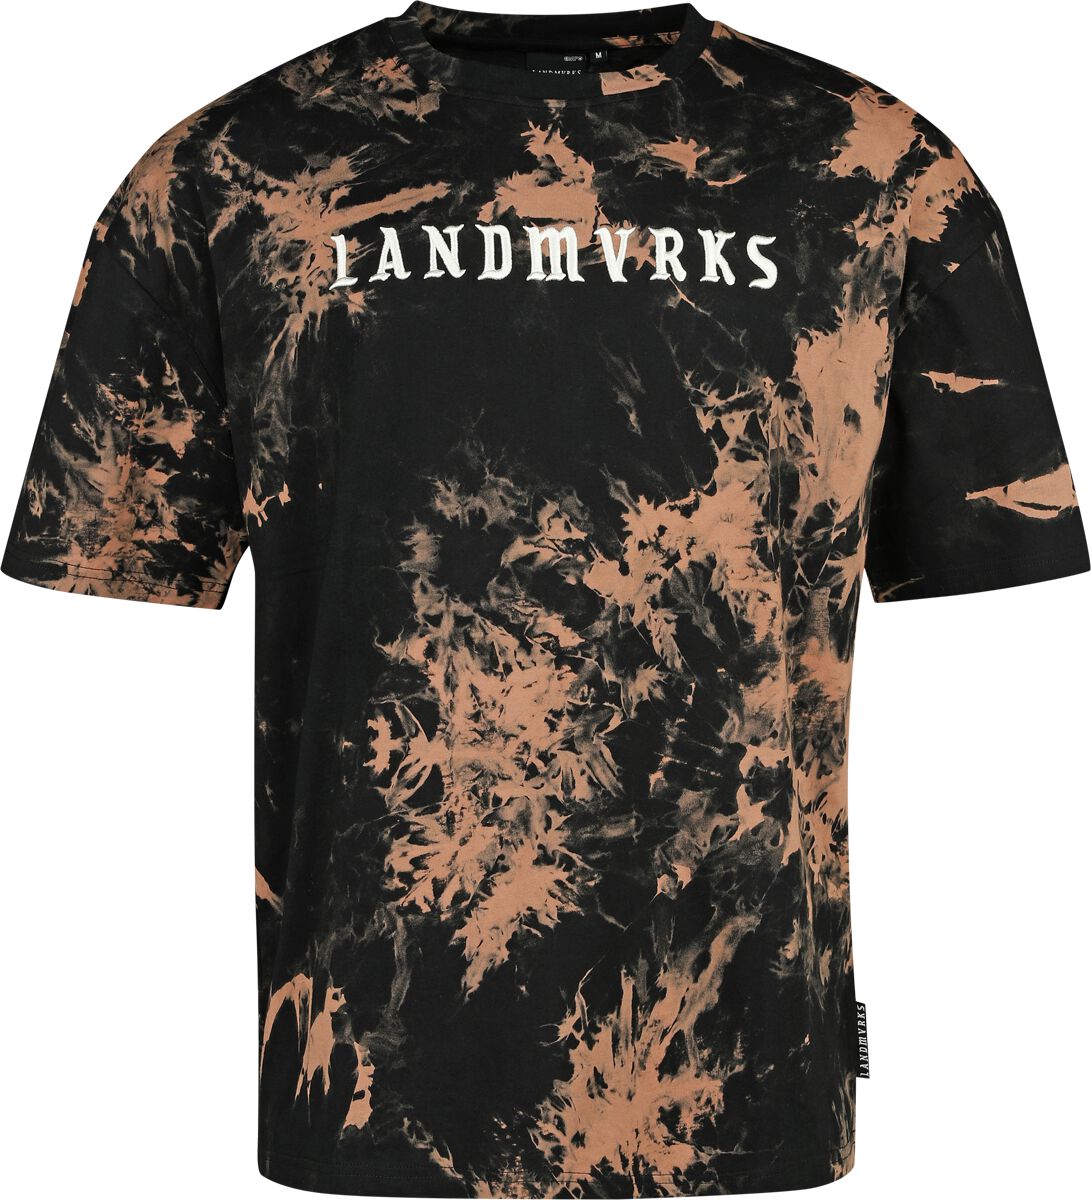 Landmvrks T-Shirt - EMP Signature Collection - S bis 3XL - für Männer - Größe S - schwarz/braun  - EMP exklusives Merchandise!